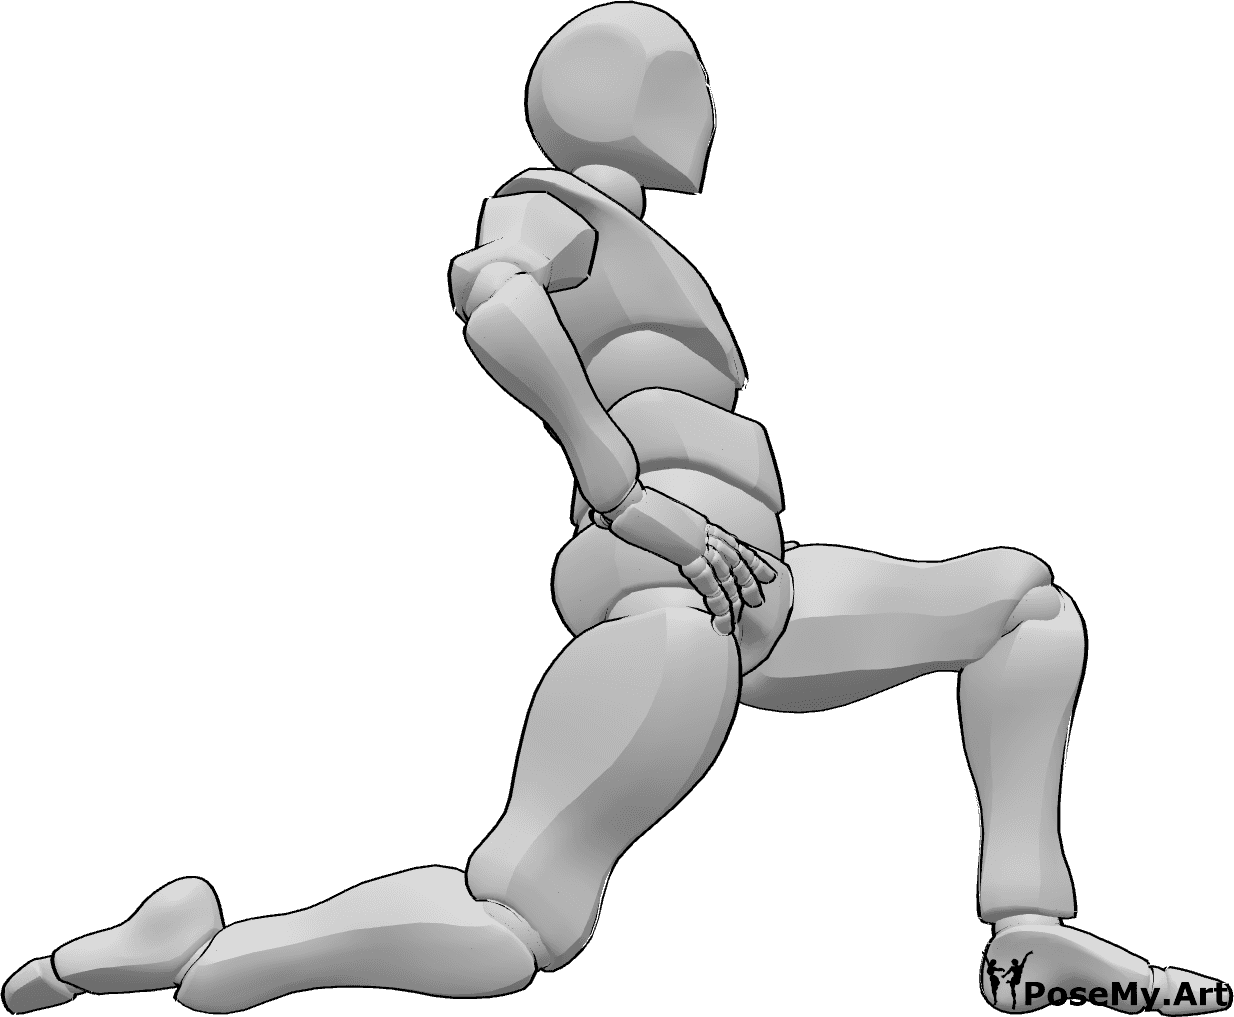 Referência de poses- Postura de alongamento ajoelhado - Homem ajoelhado com as mãos nas ancas, esticando o tronco e as pernas